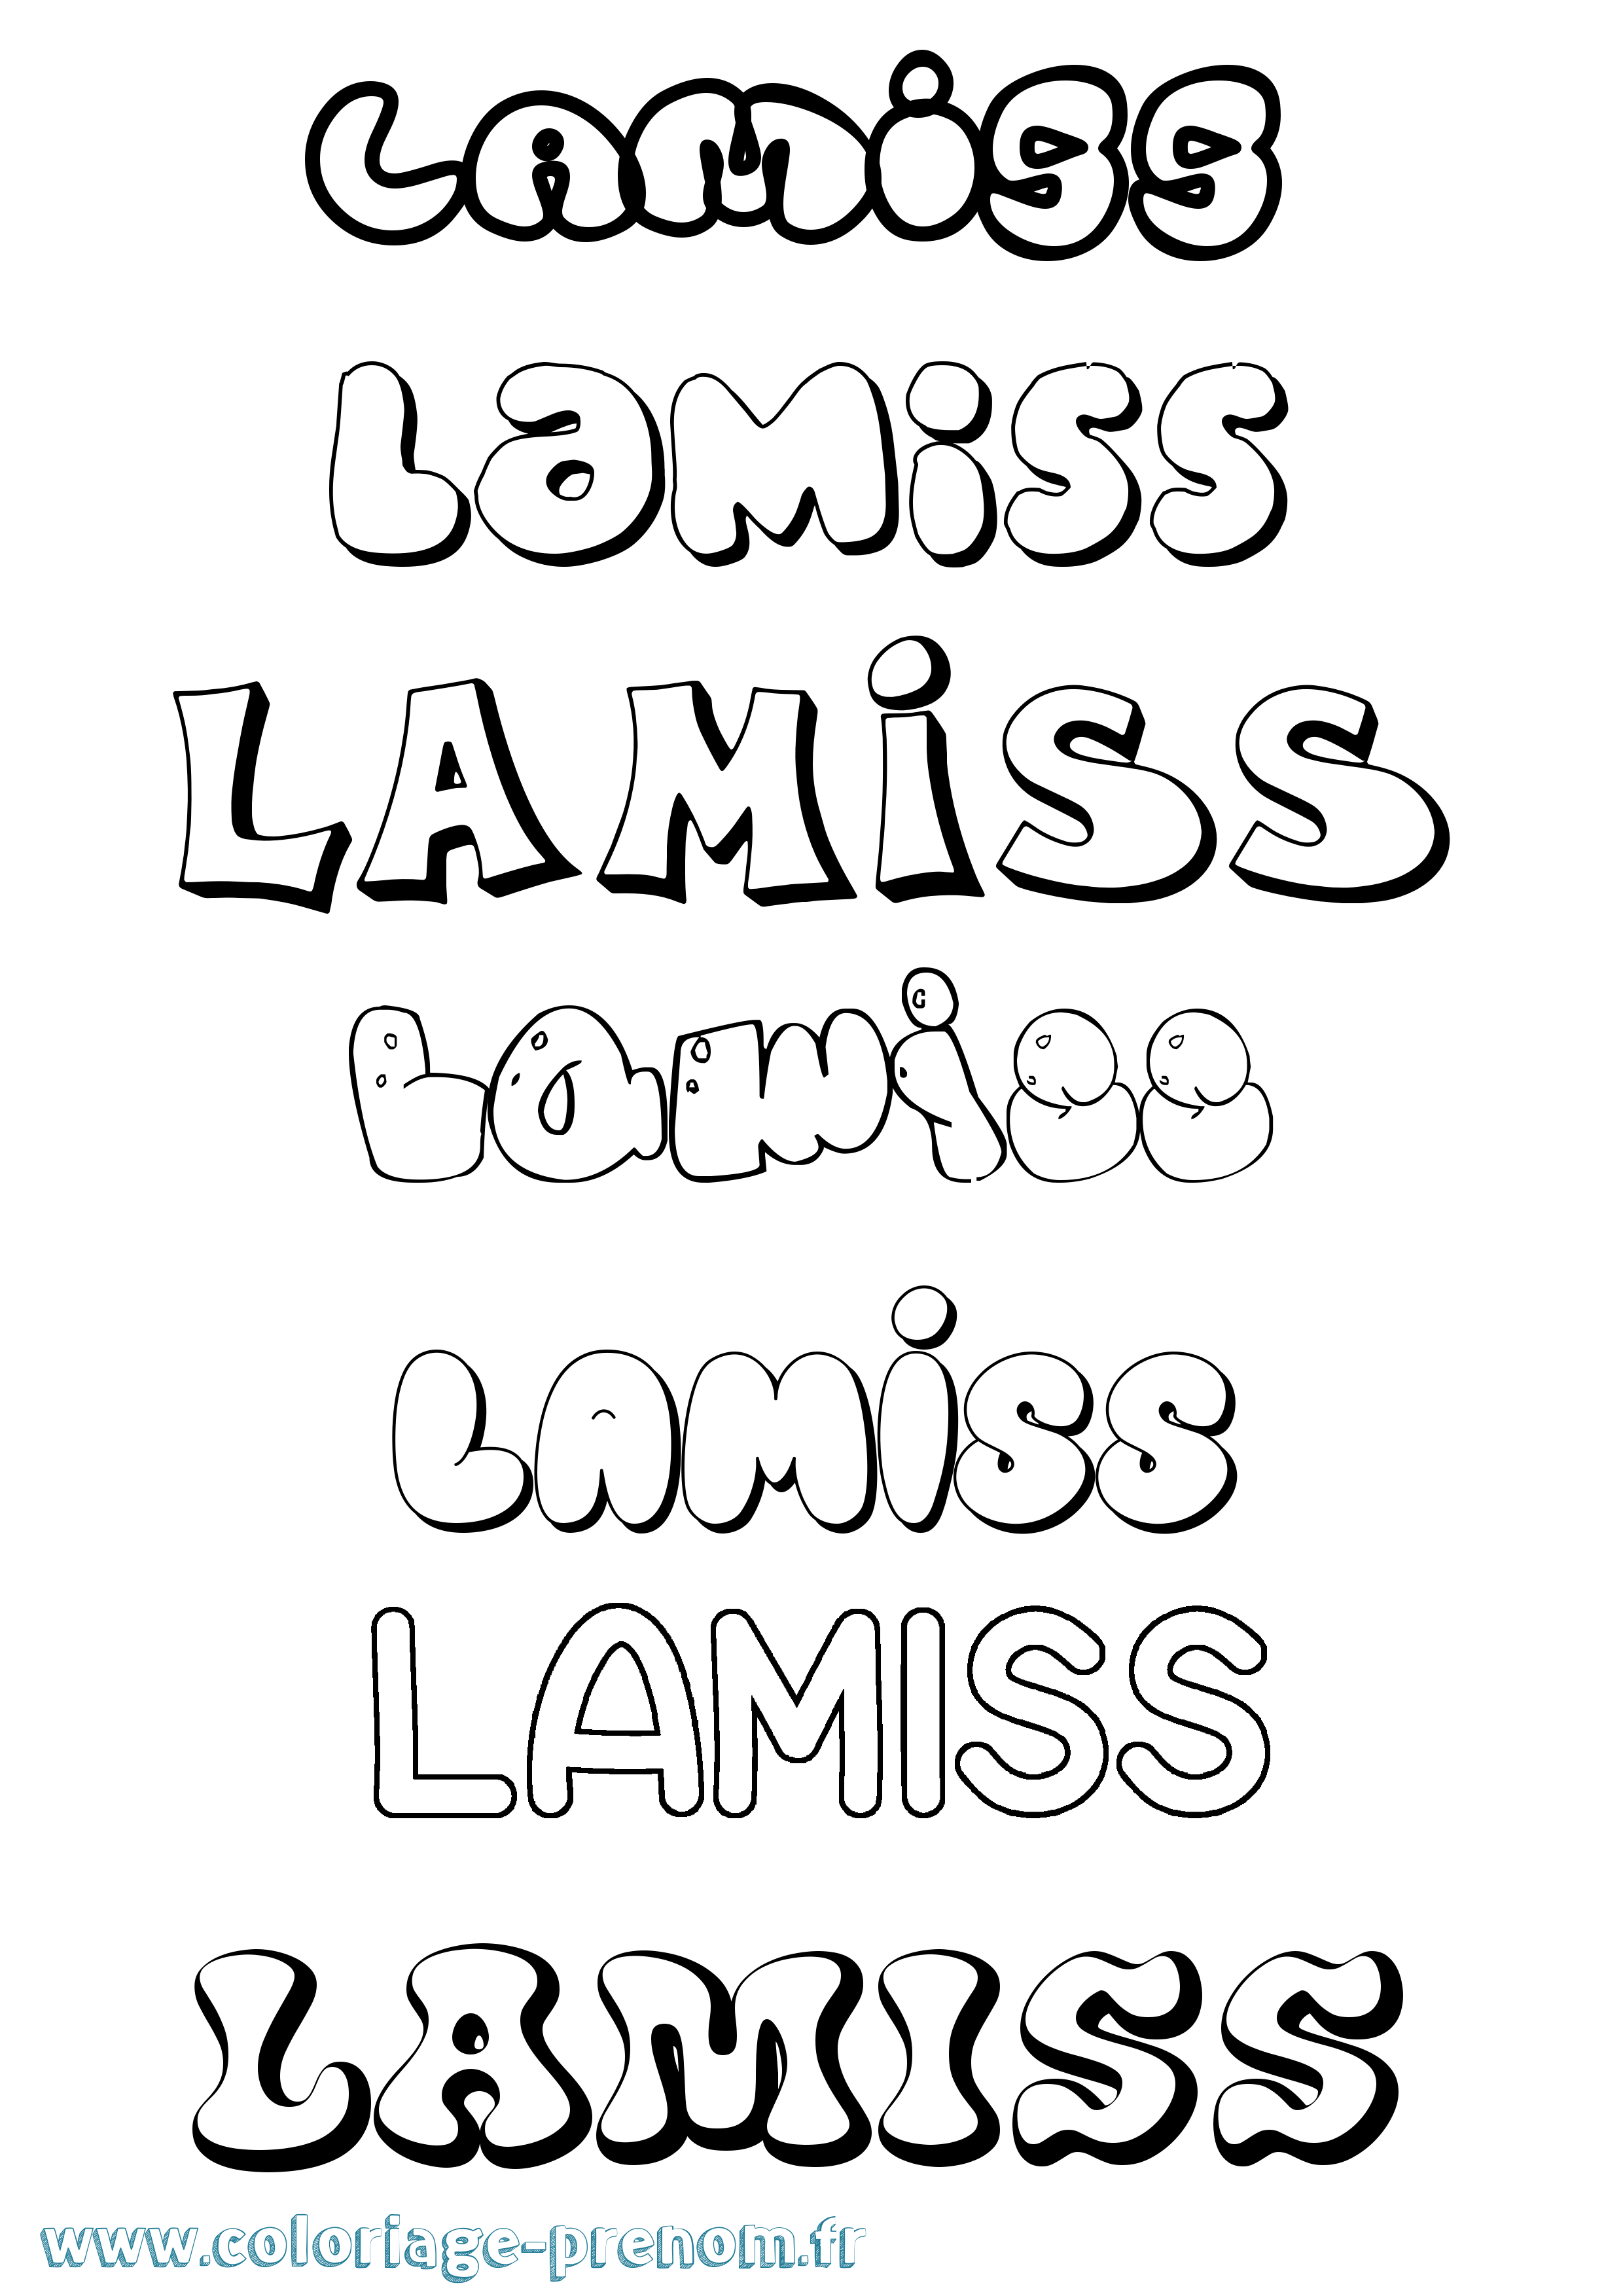 Coloriage prénom Lamiss Bubble